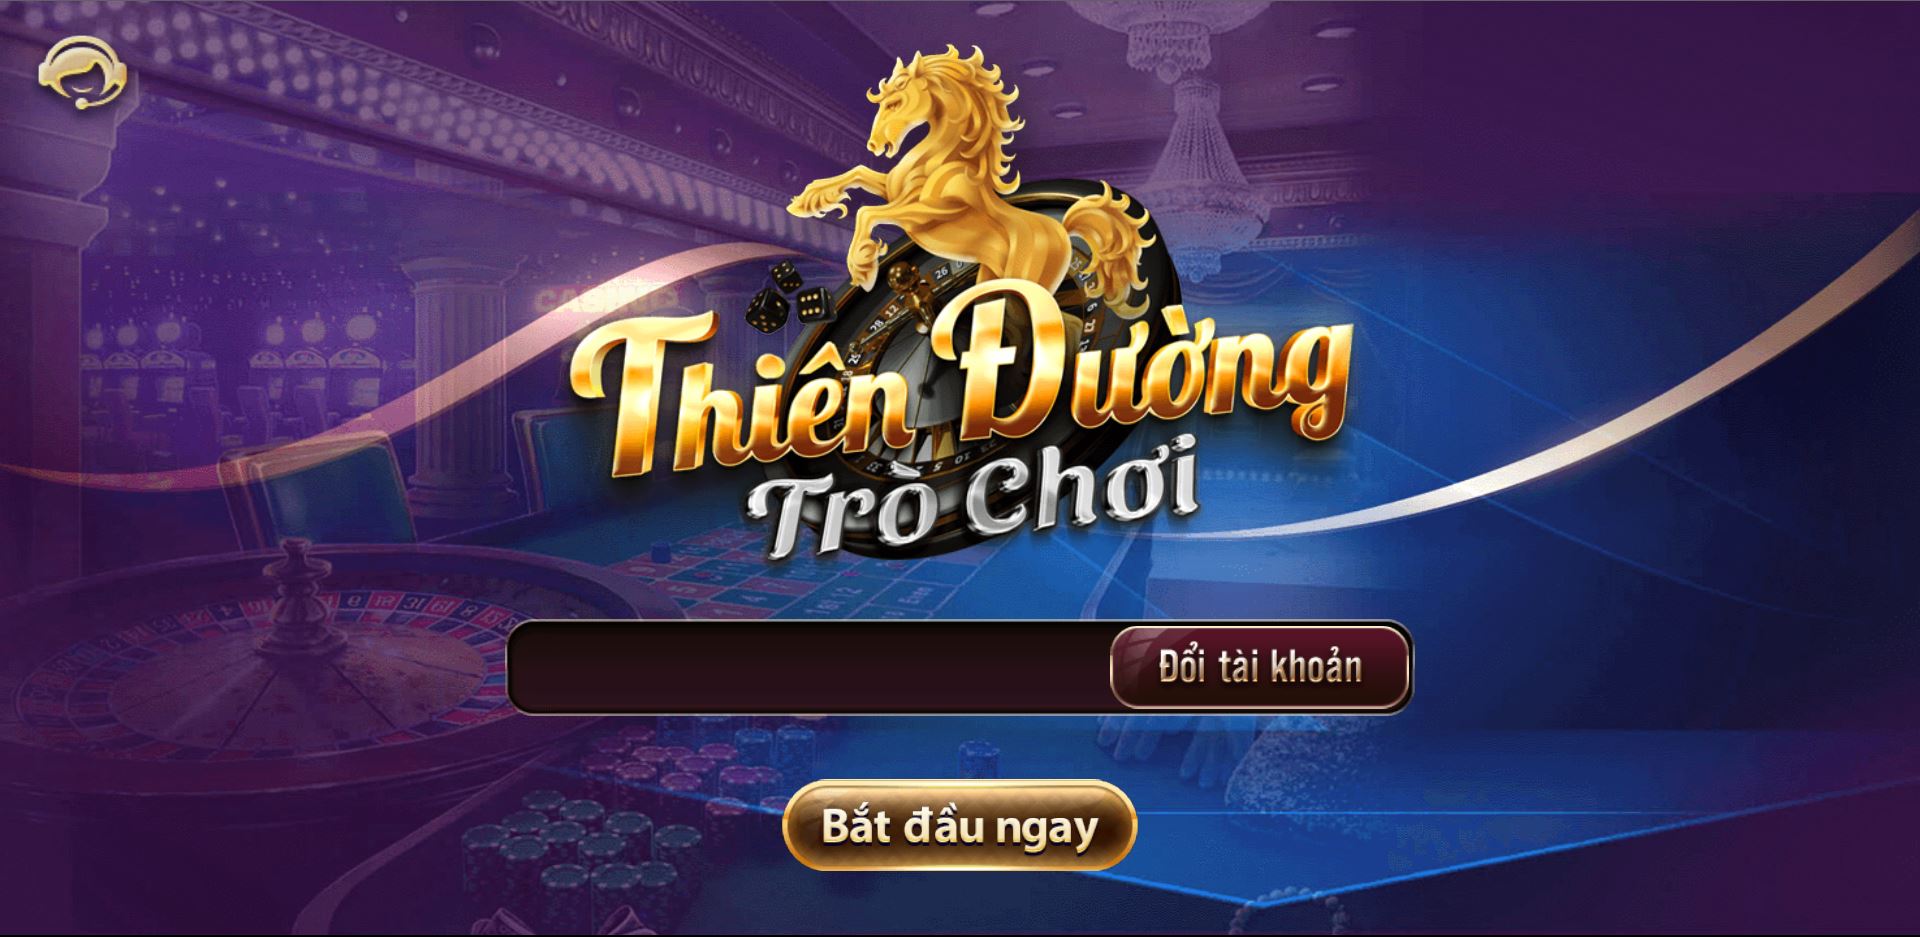 code thien duong tro choi 14